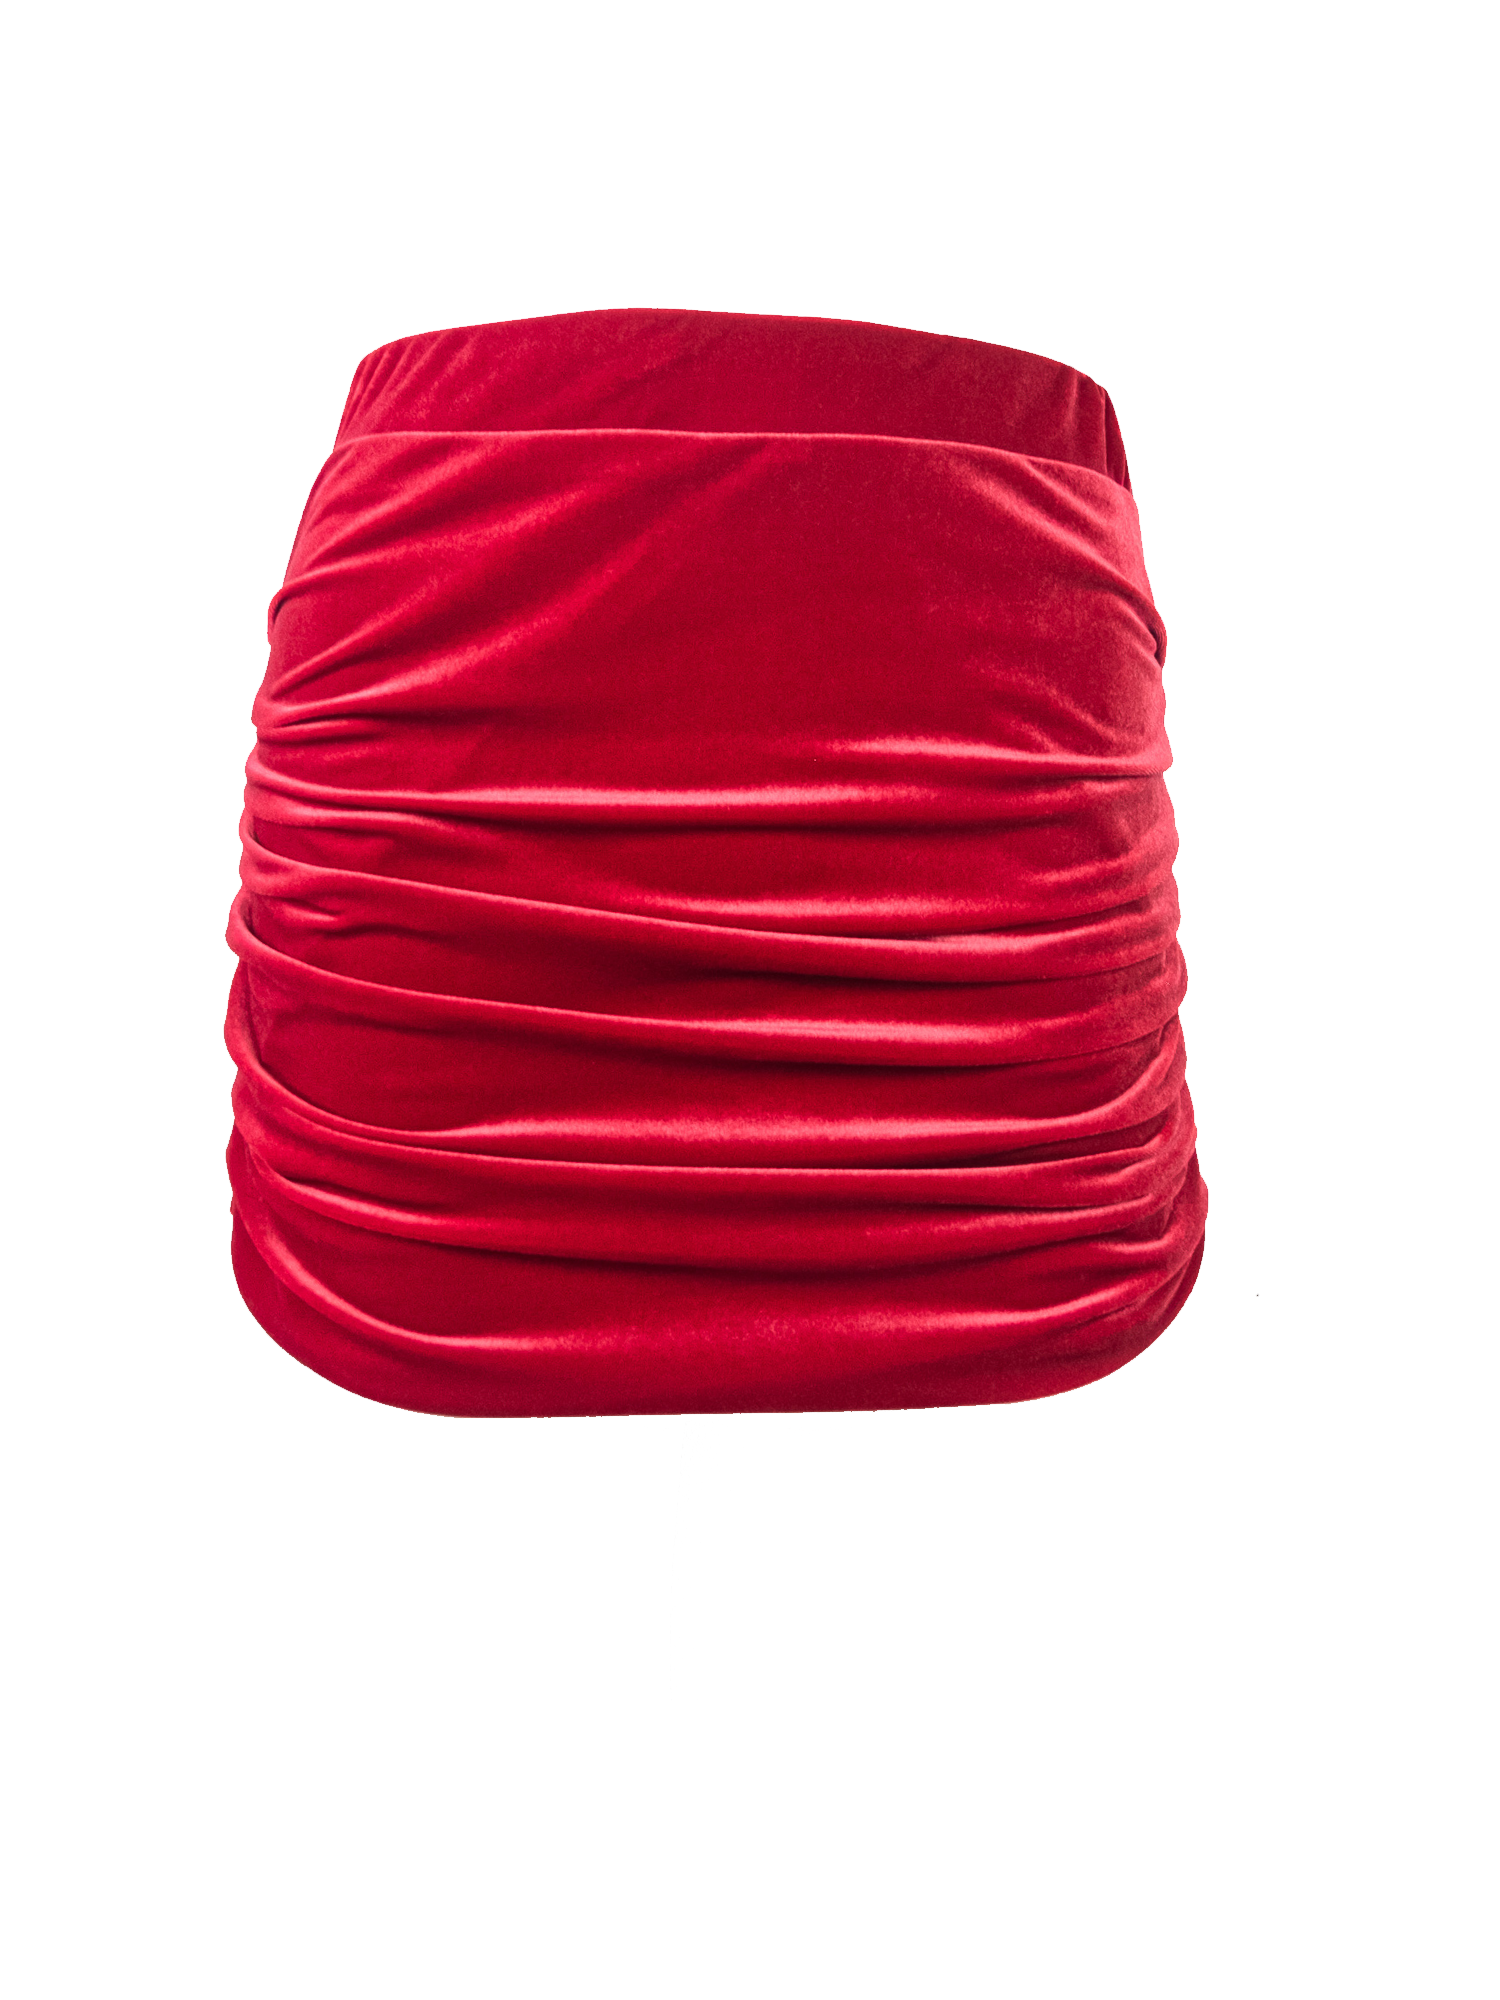 NINA - mini skirt in red chenille